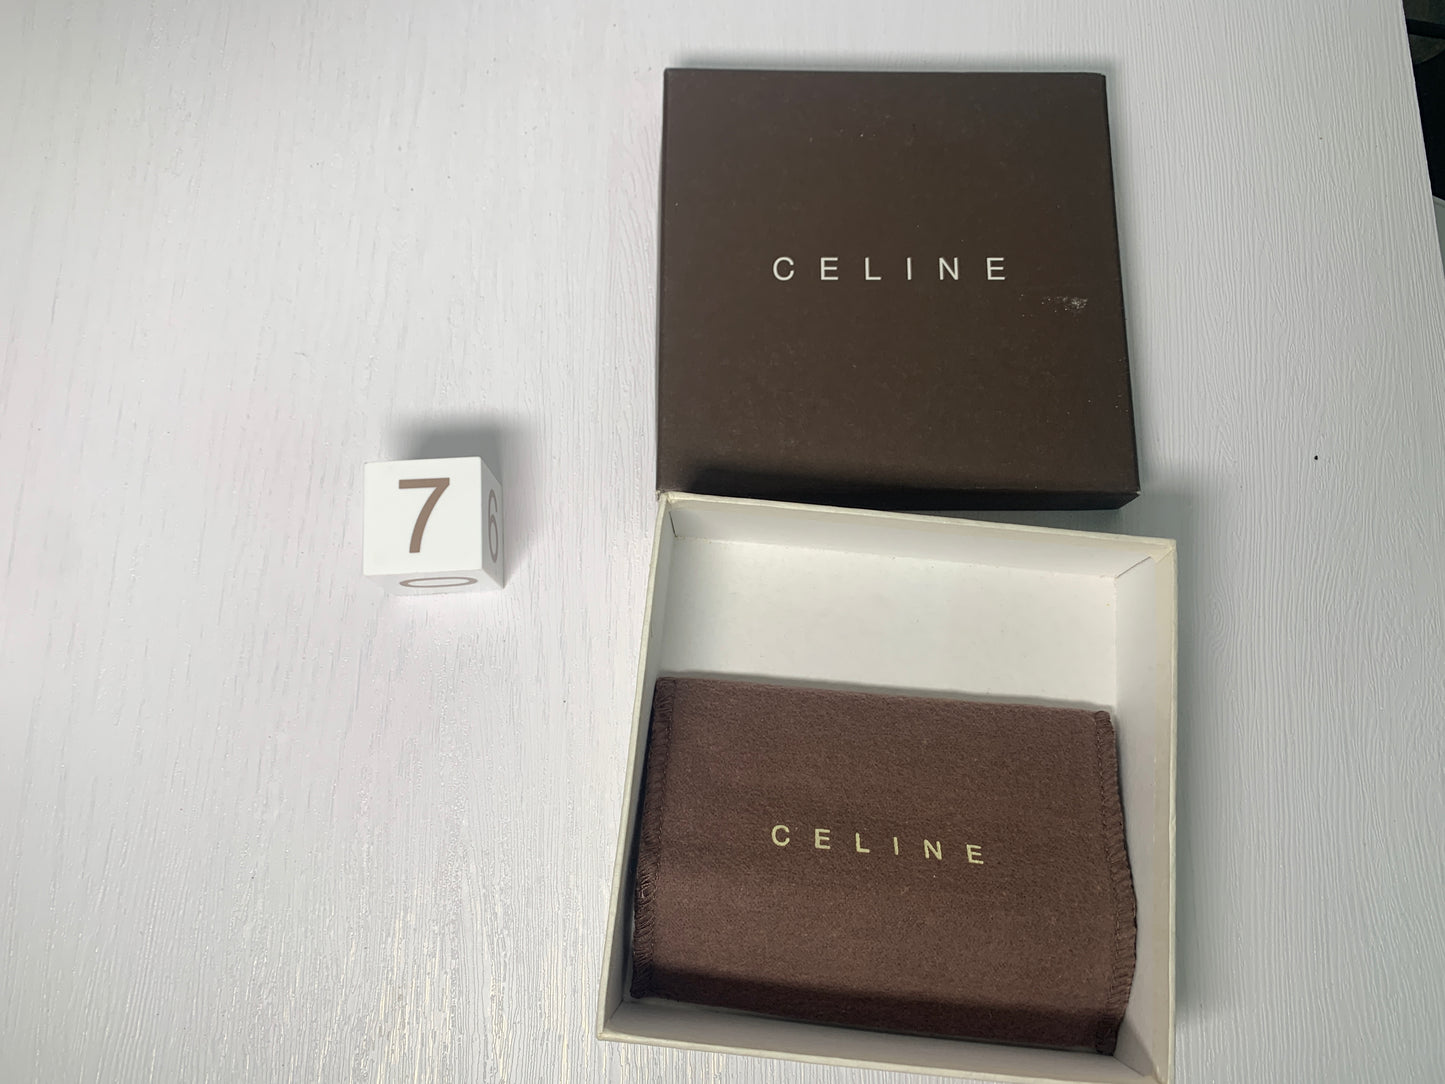 禮品盒 Bvlgari Sette Celine BV mikimoto gemcerey for wallet scarf belt bag - 9NOV